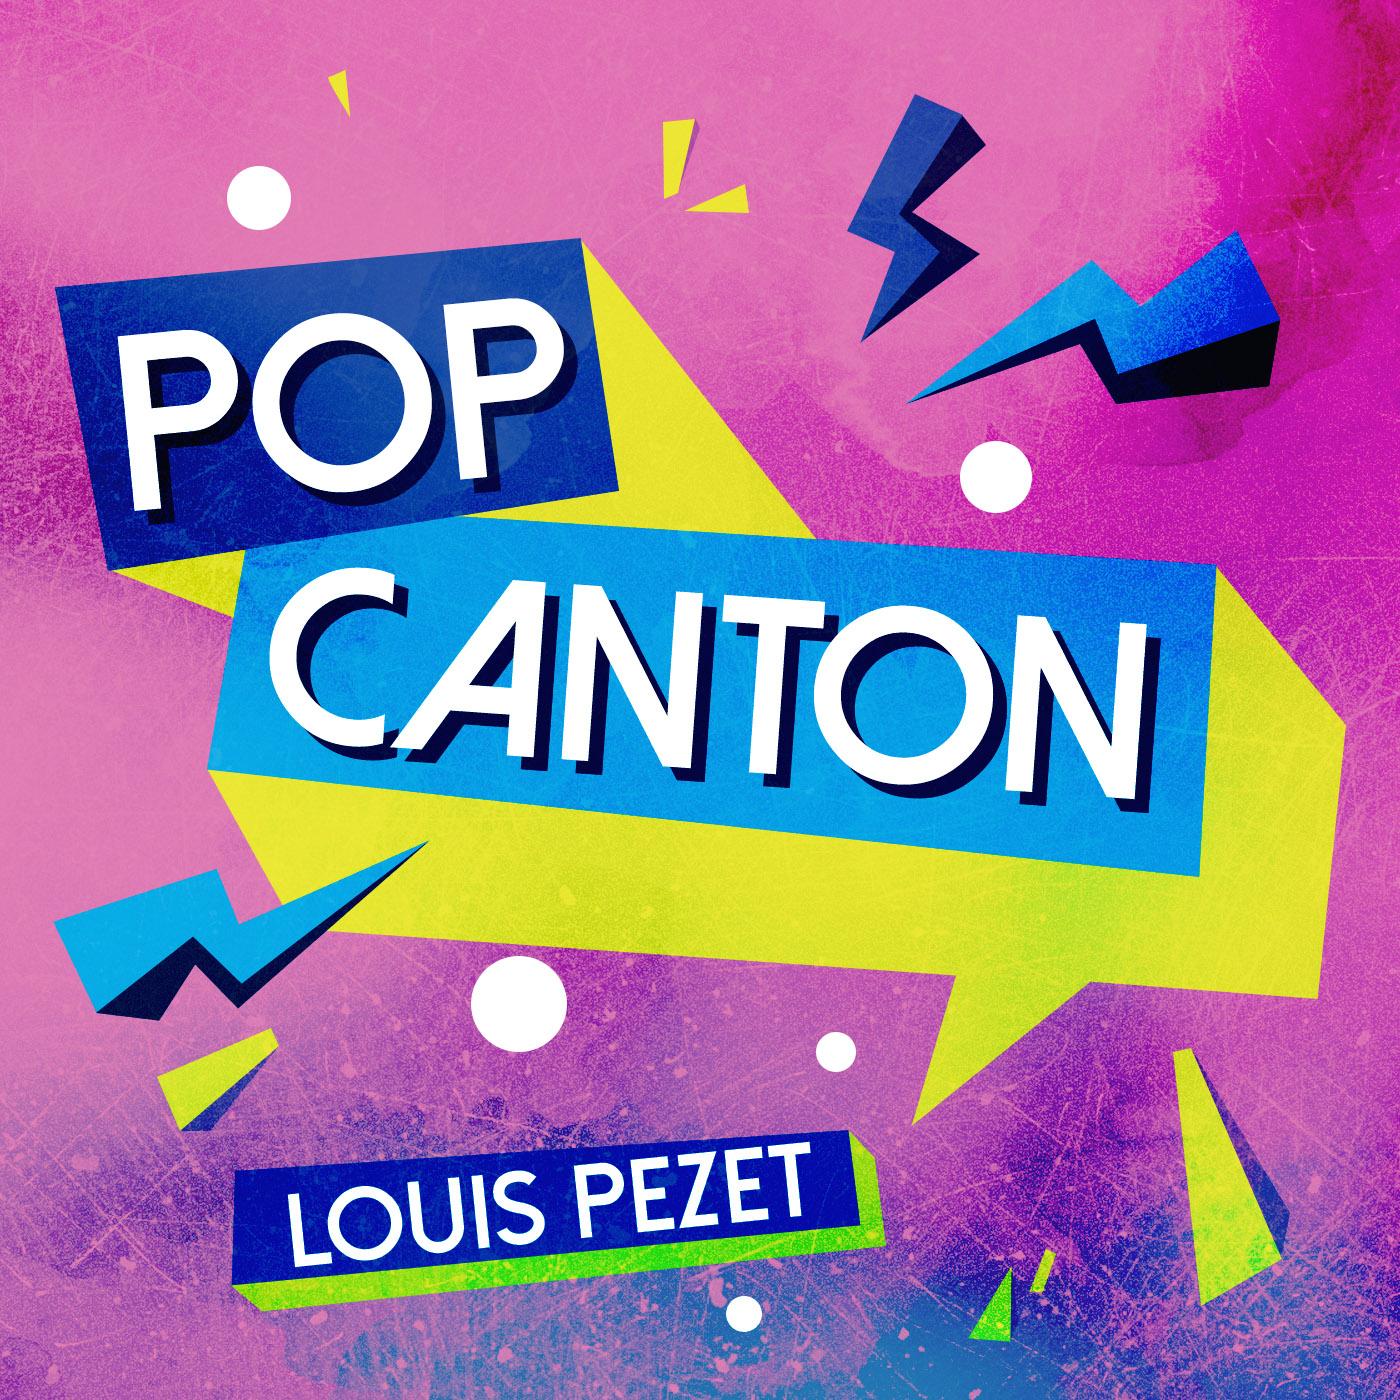 Pop Canton #02 amb Louis Pezet